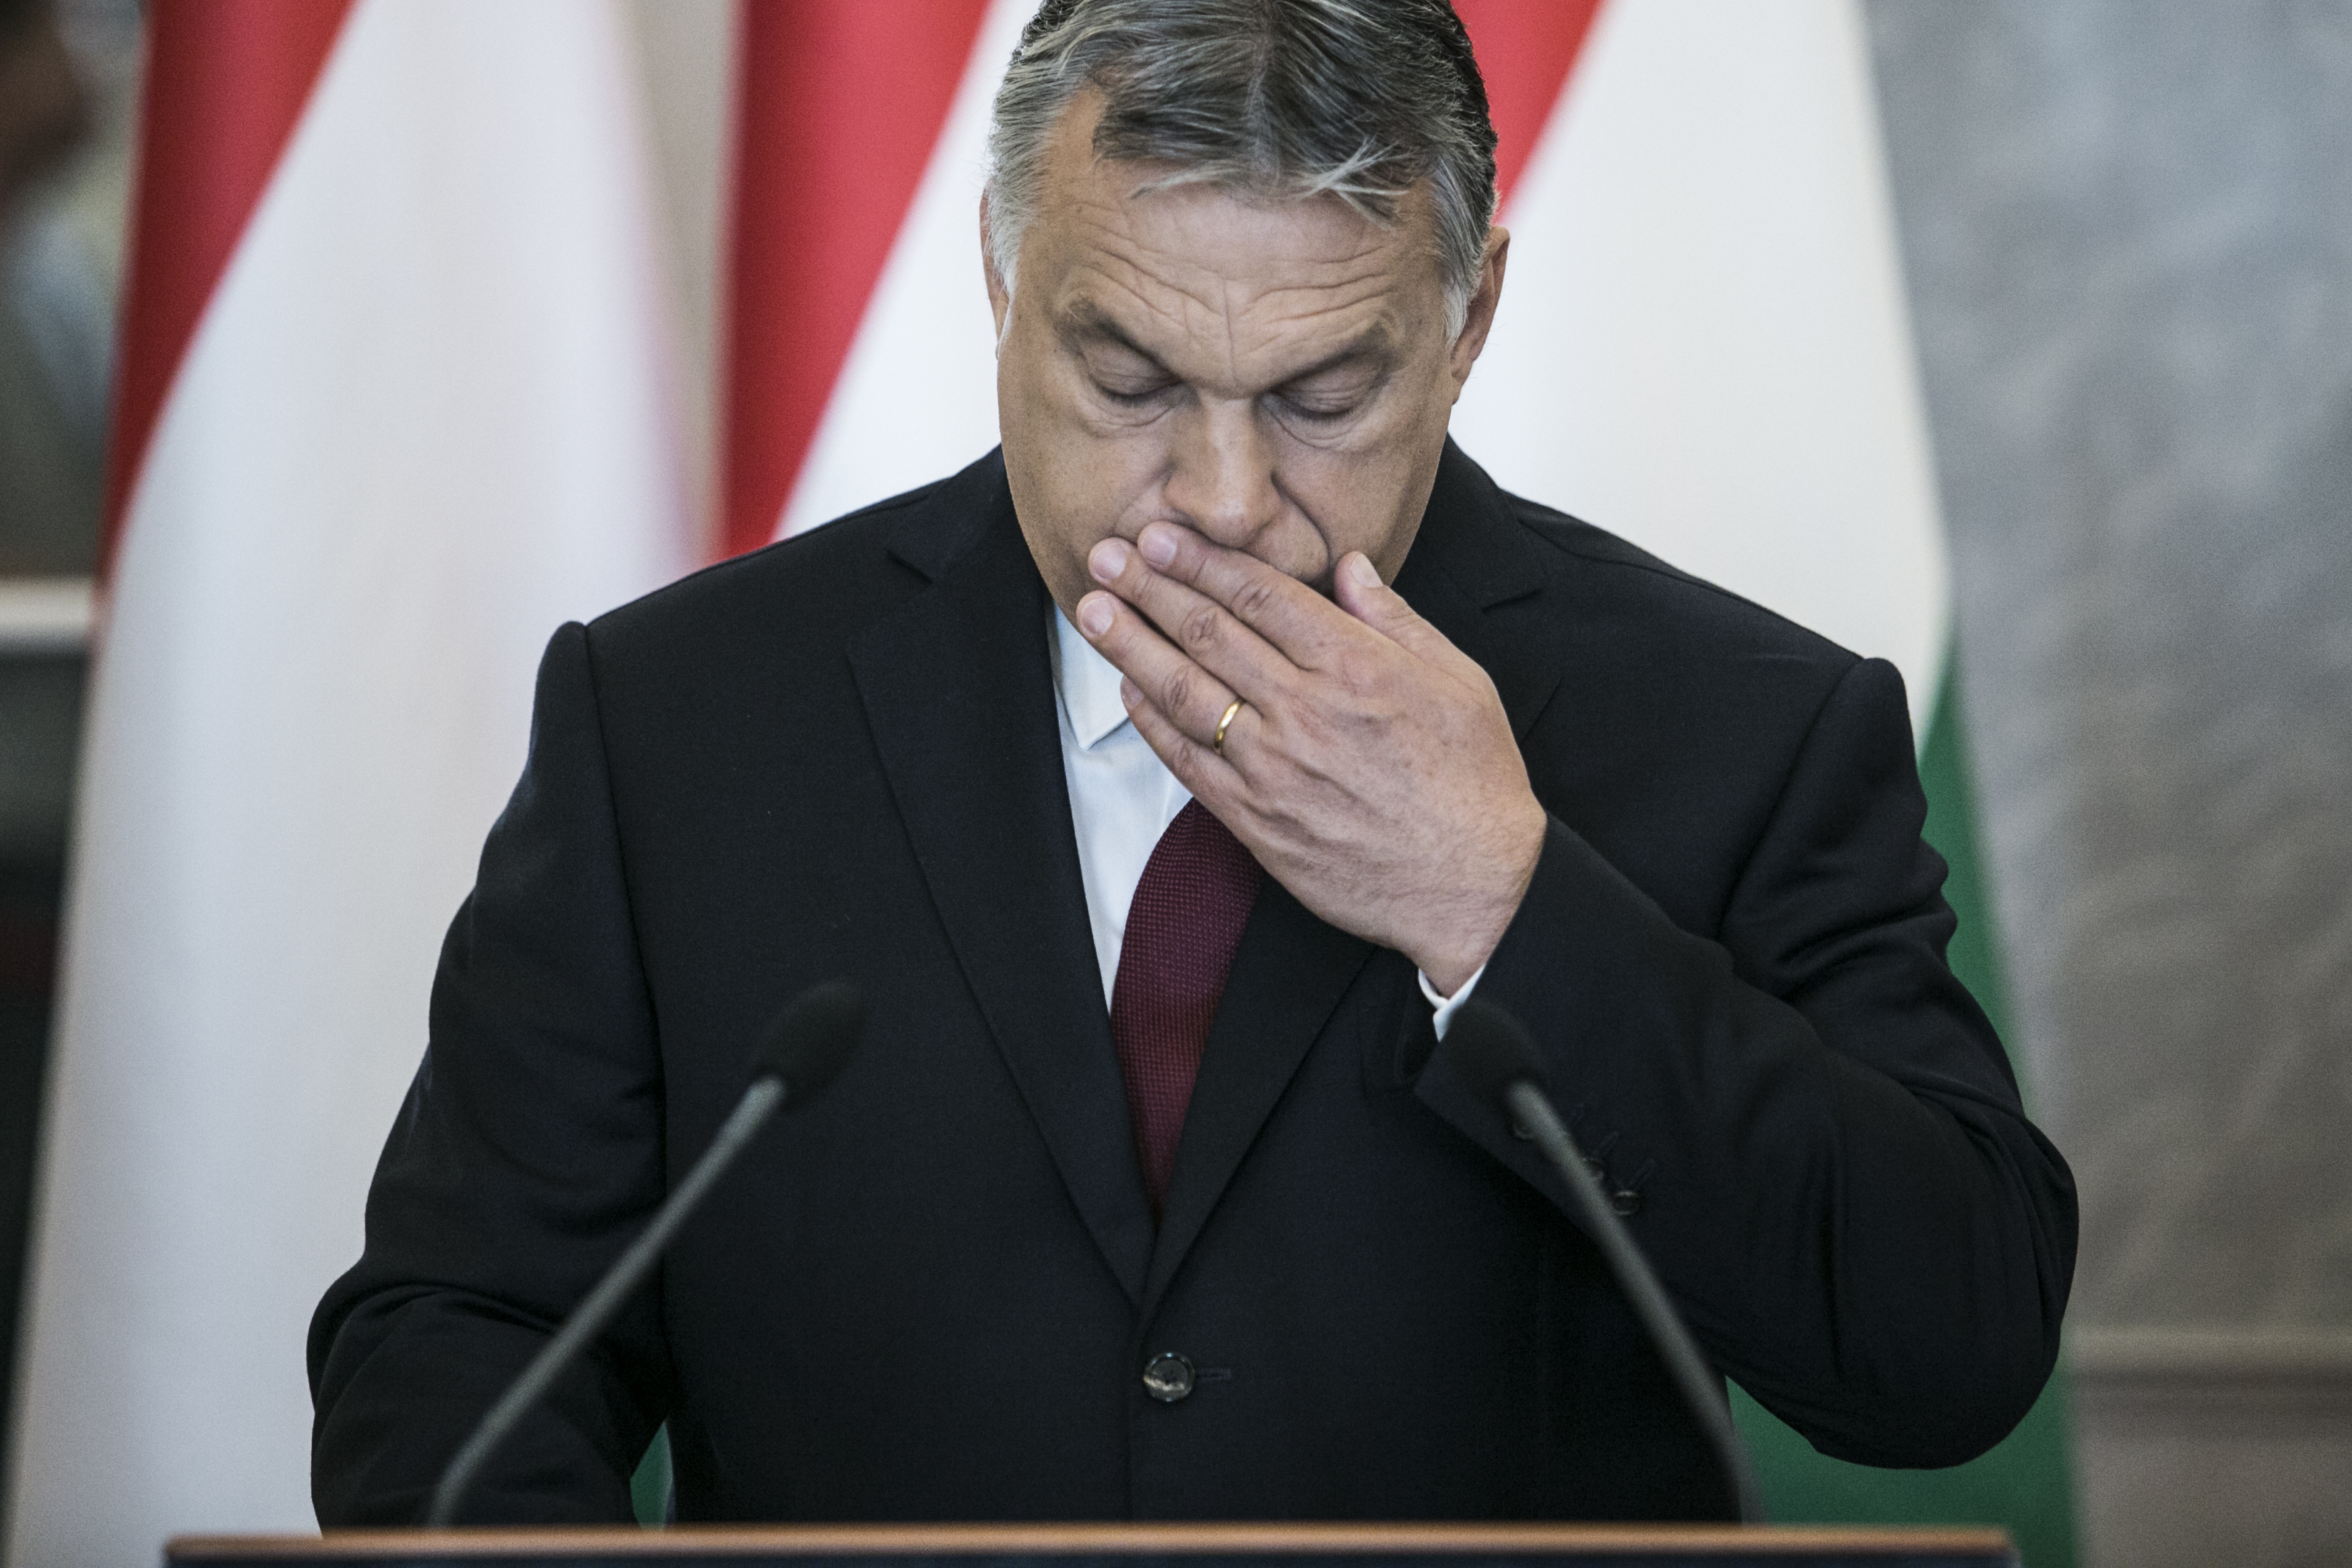 Még meg sem alakult az új kormány, de Orbán már füllent arról, hogy a Kúria elvett egy mandátumot a Fidesztől